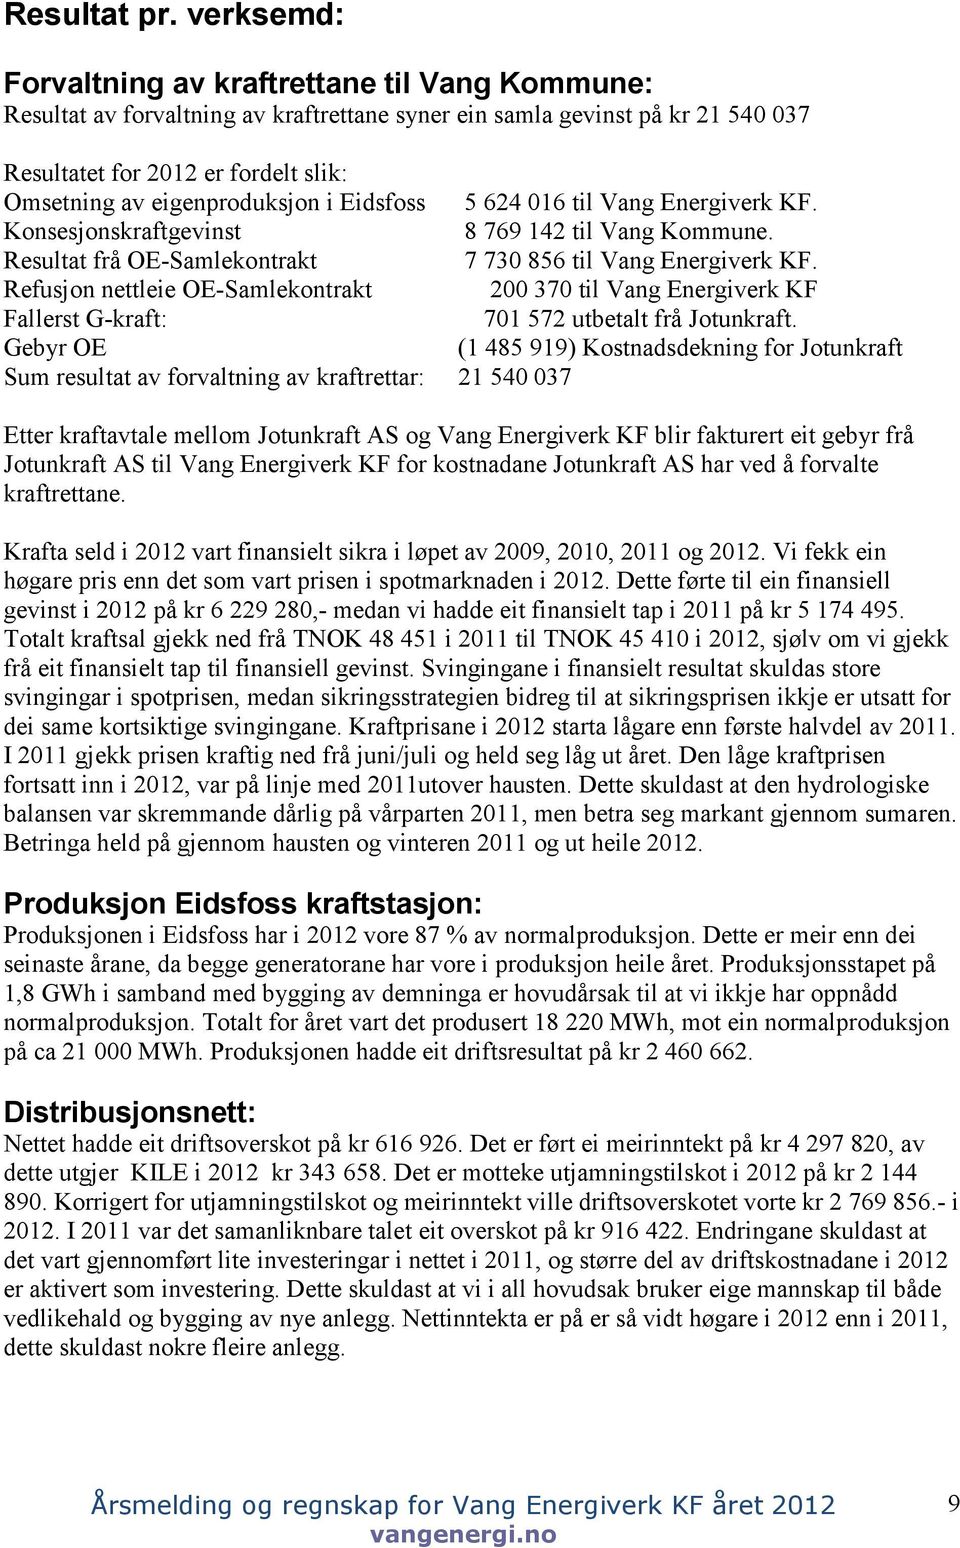 eigenproduksjon i Eidsfoss 5 624 016 til Vang Energiverk KF. Konsesjonskraftgevinst 8 769 142 til Vang Kommune. Resultat frå OE-Samlekontrakt 7 730 856 til Vang Energiverk KF.